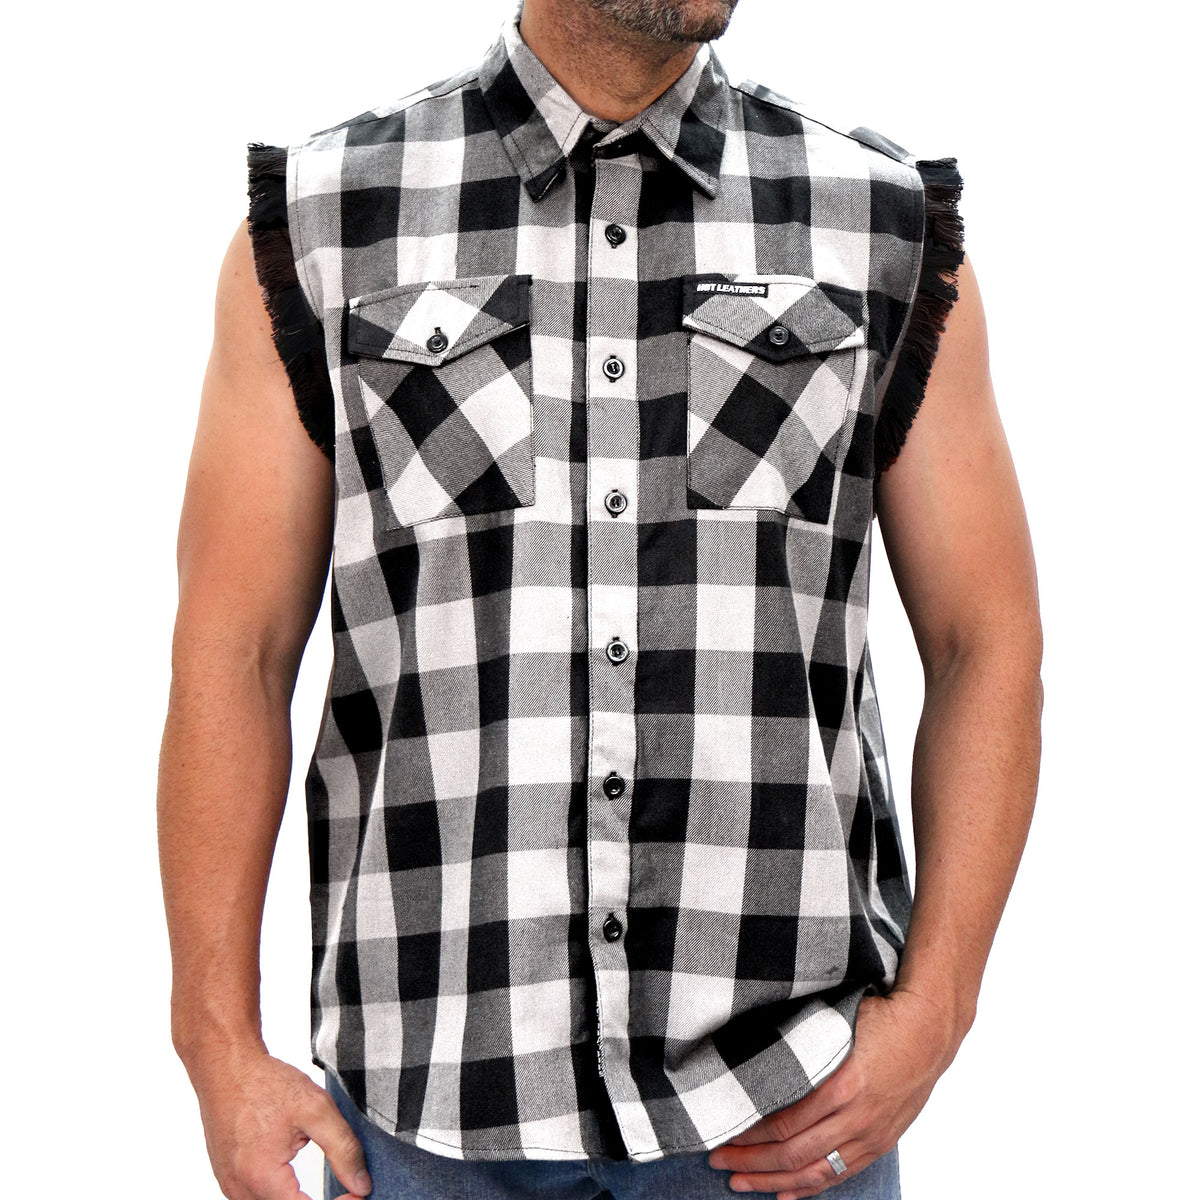 Hot Leathers Black and White Sleeveless Flannel Fringe Shirt FLM5202